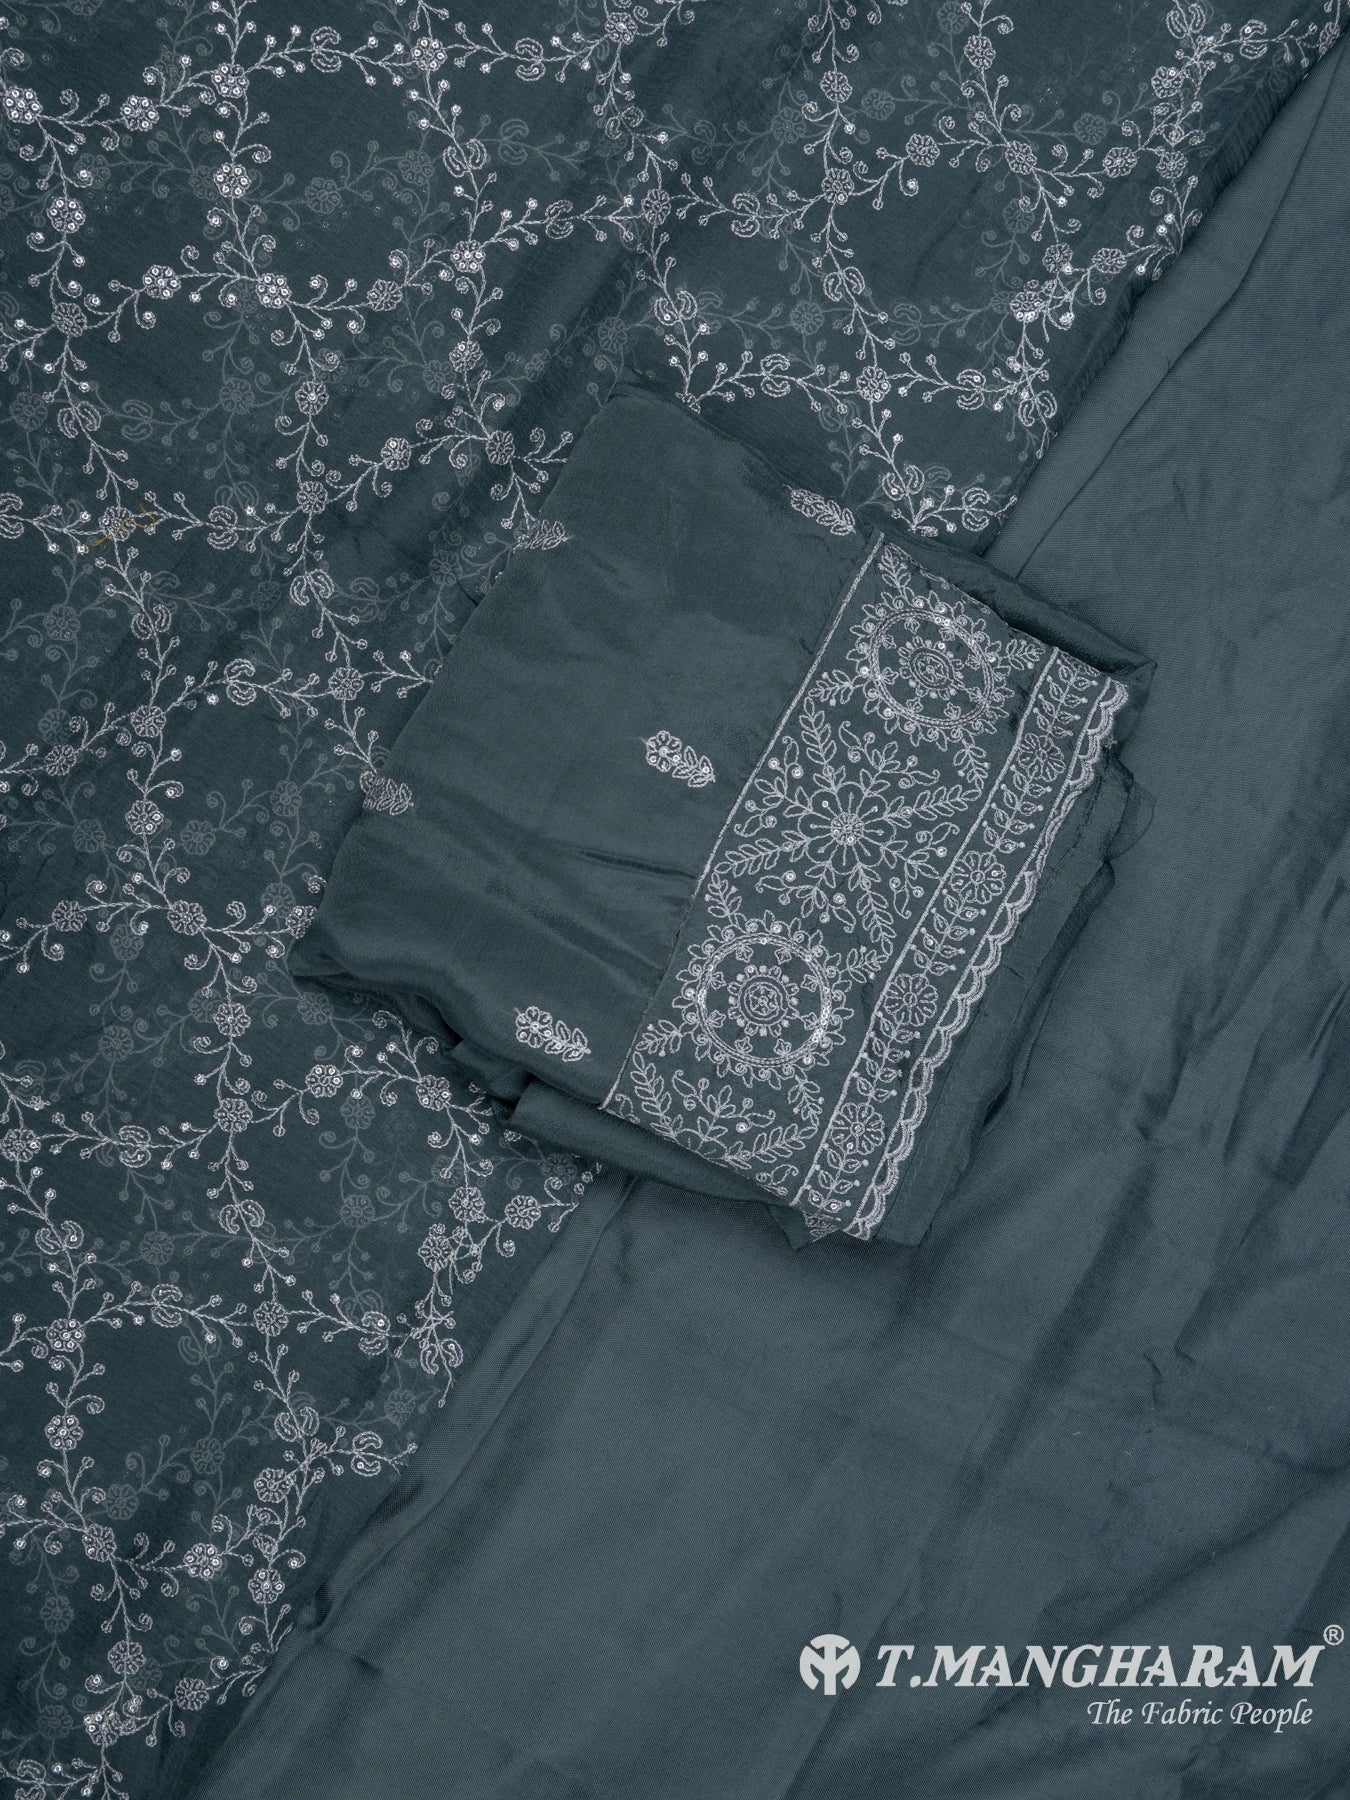 Dark Grey Tissue Organza Chudidhar Fabric Set - EG1578 view-1